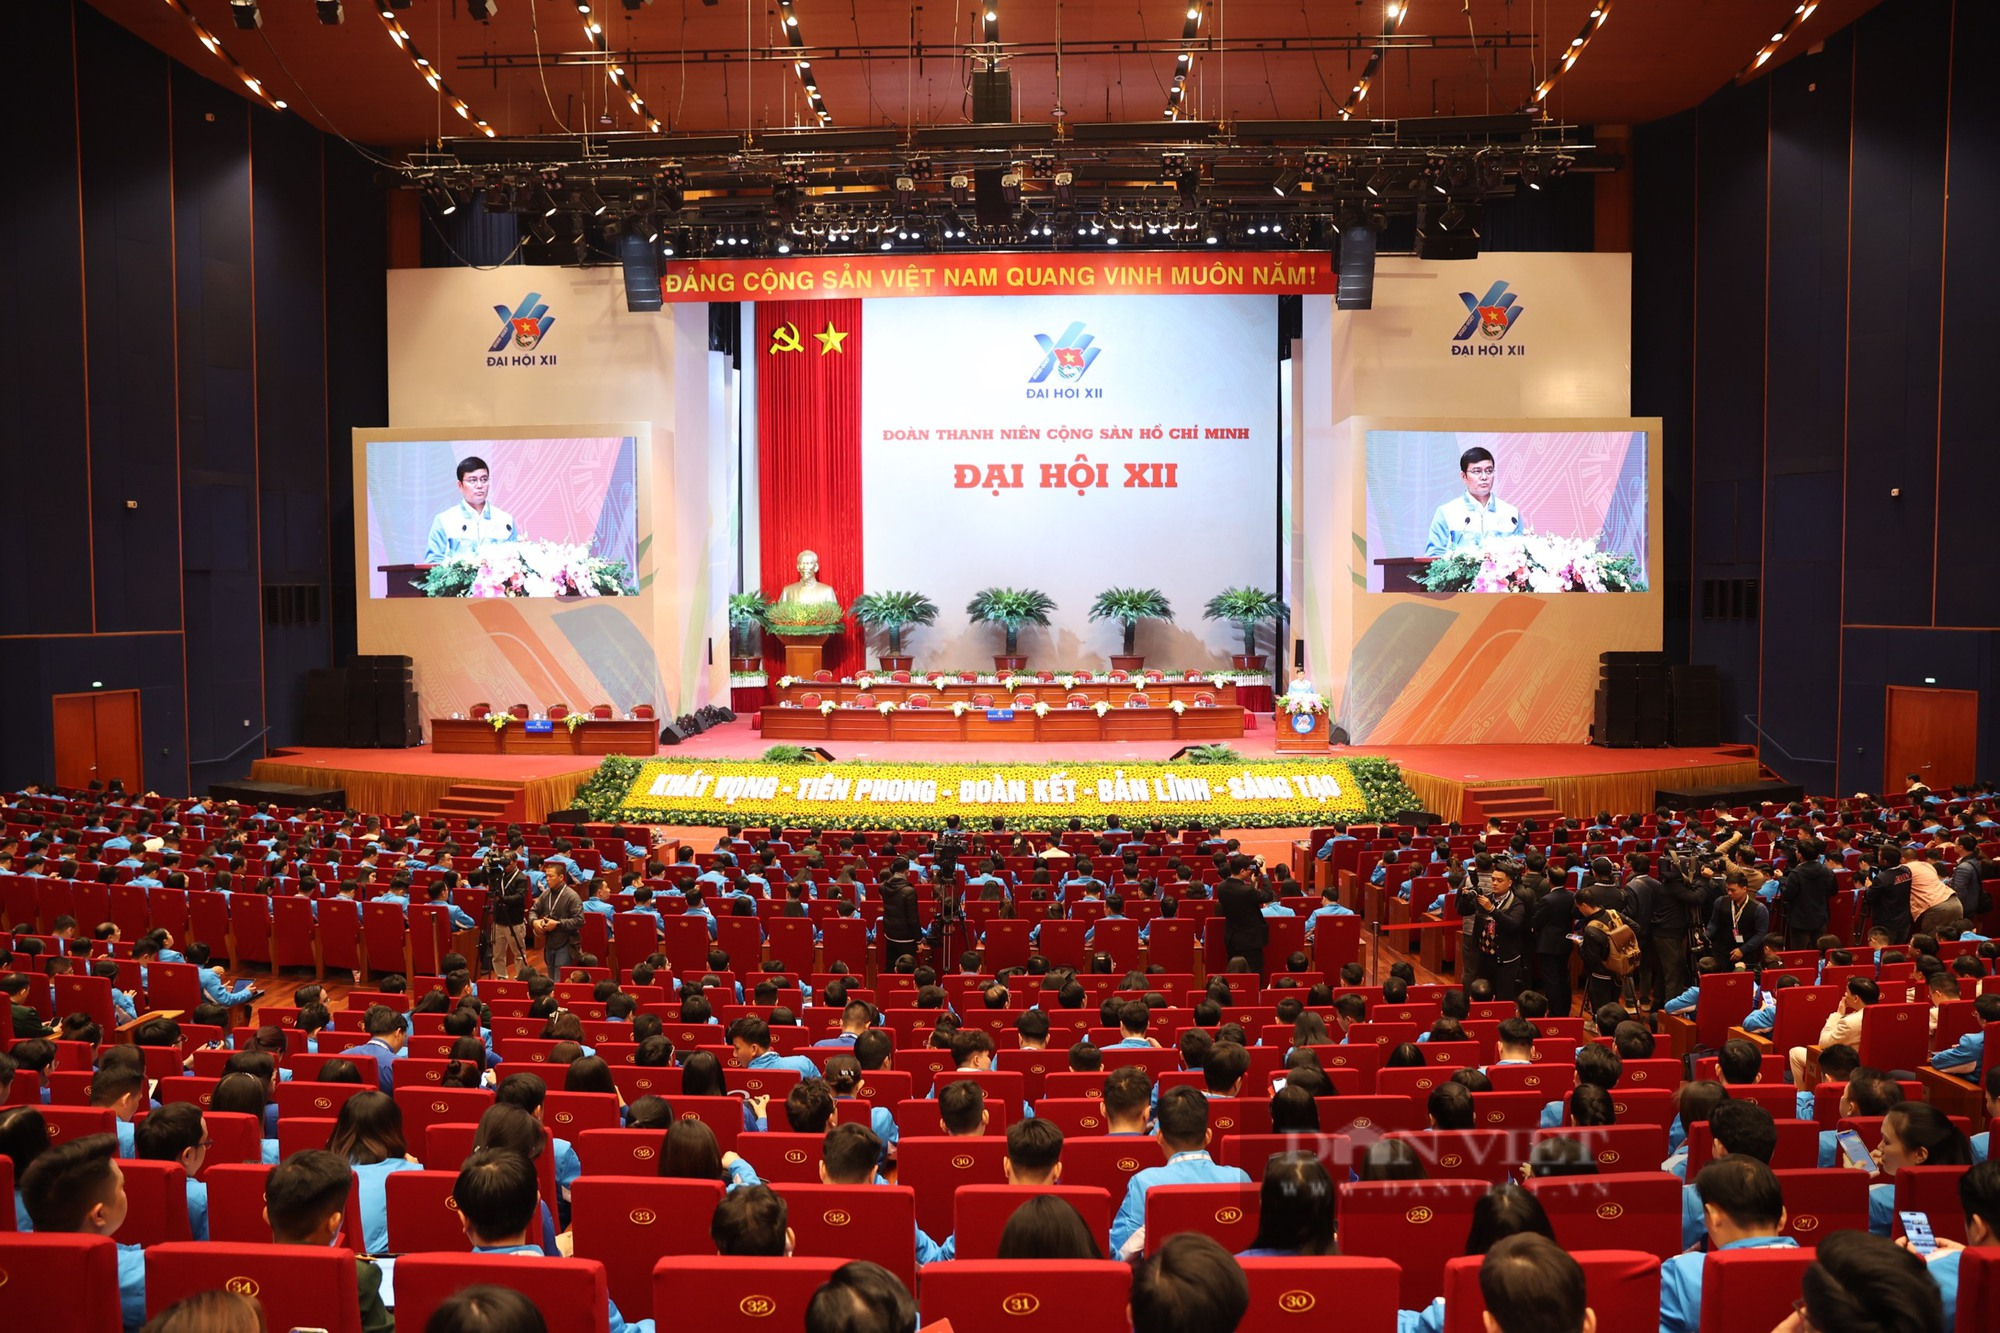 Hình ảnh khai mạc Đại hội đại biểu toàn quốc Đoàn TNCS Hồ Chí Minh lần thứ XII - Ảnh 1.